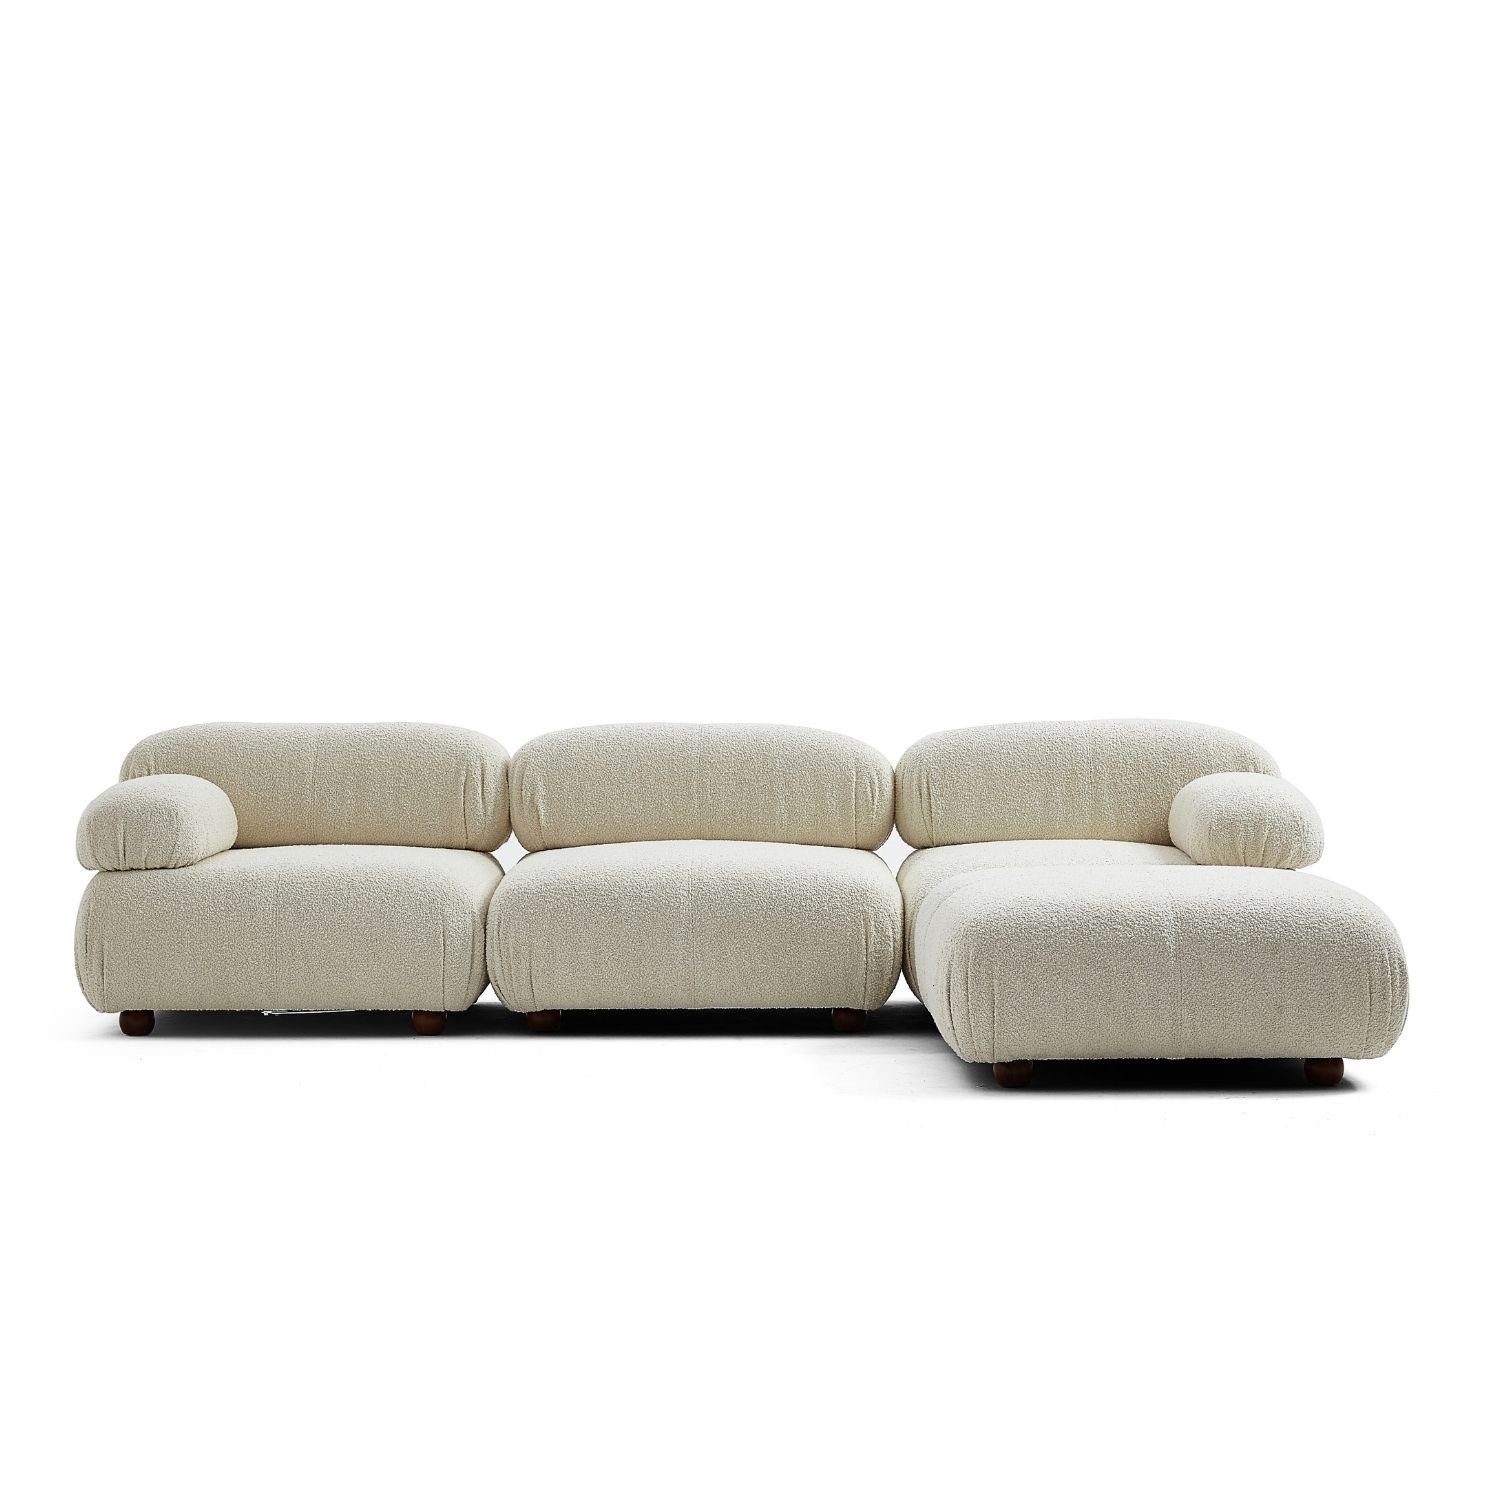 Sitzmöbel neueste aus Sofa me Rotbraun-Lieferung im enthalten! Touch und Aufbau Knuffiges Generation Preis Komfortschaum